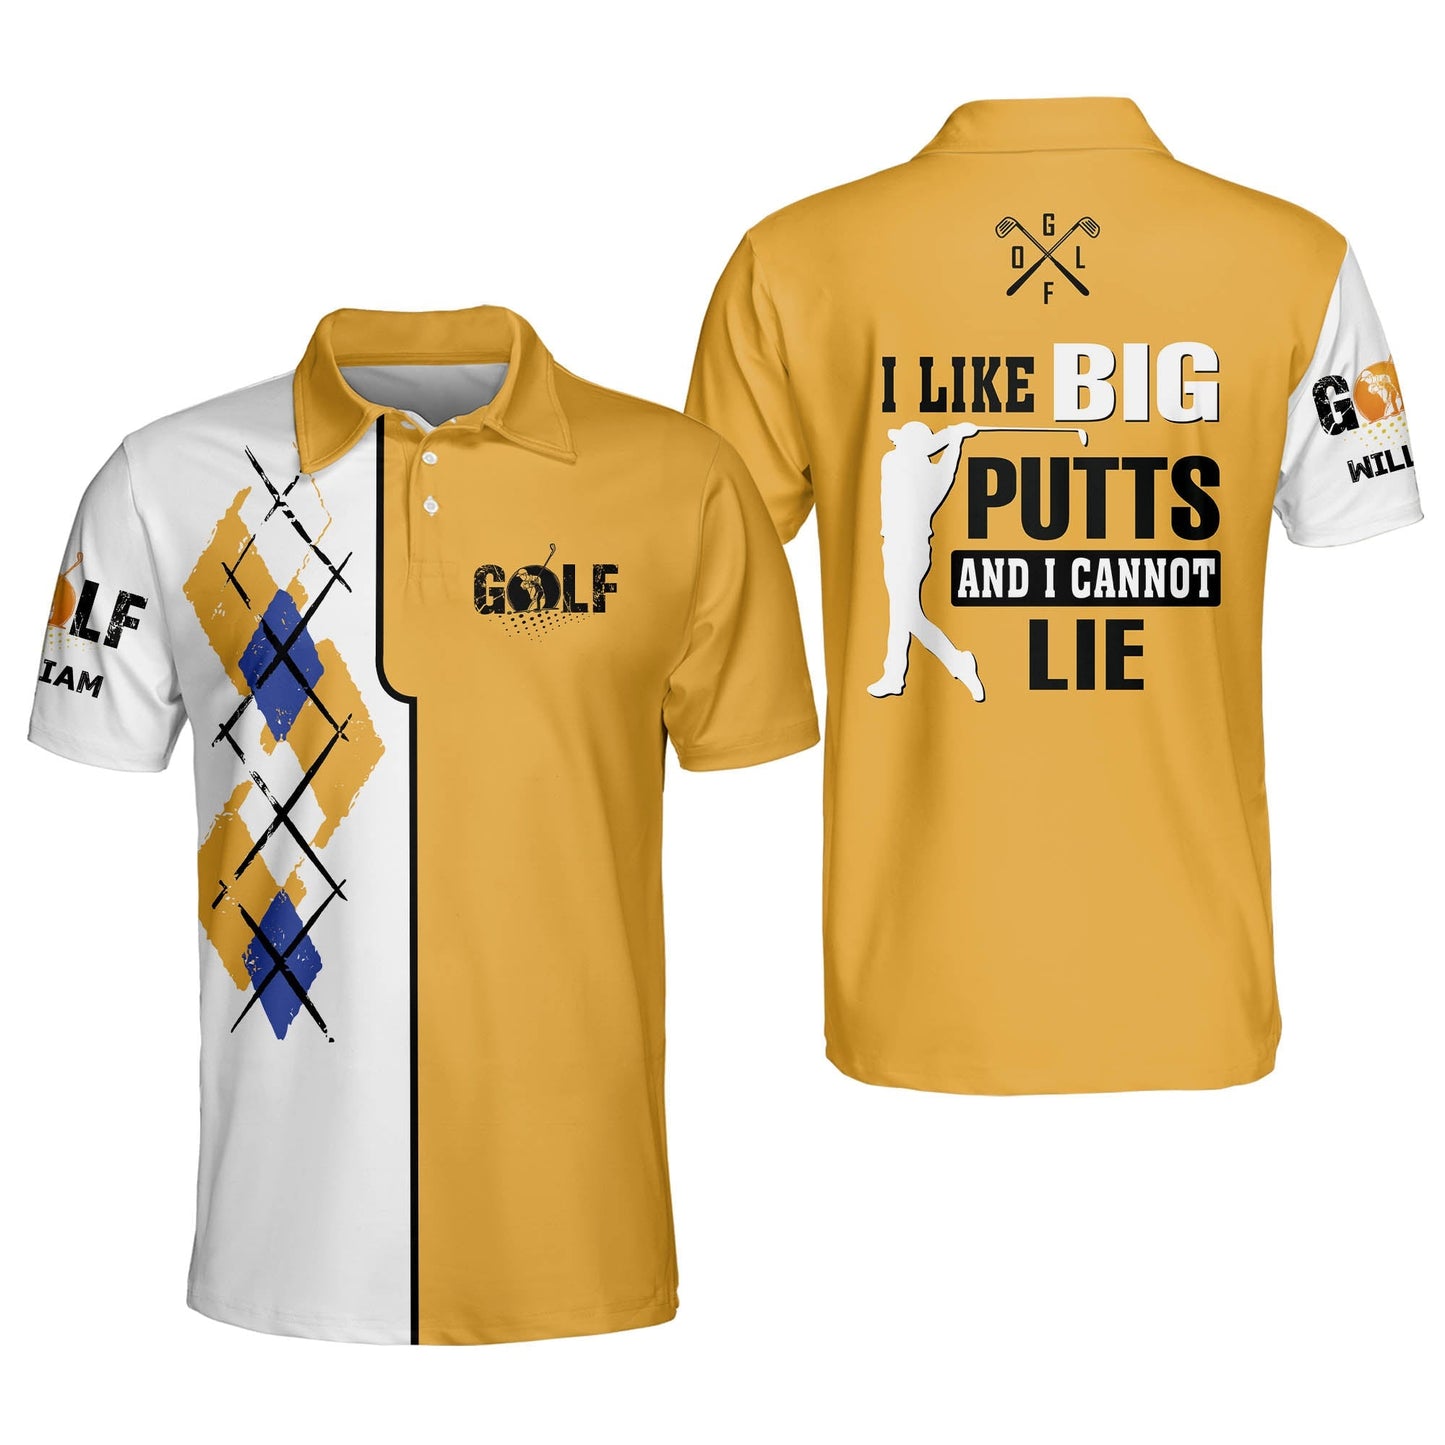 I Like Big Putts And I Cannot Lie Golf Polo Shirt GM0164